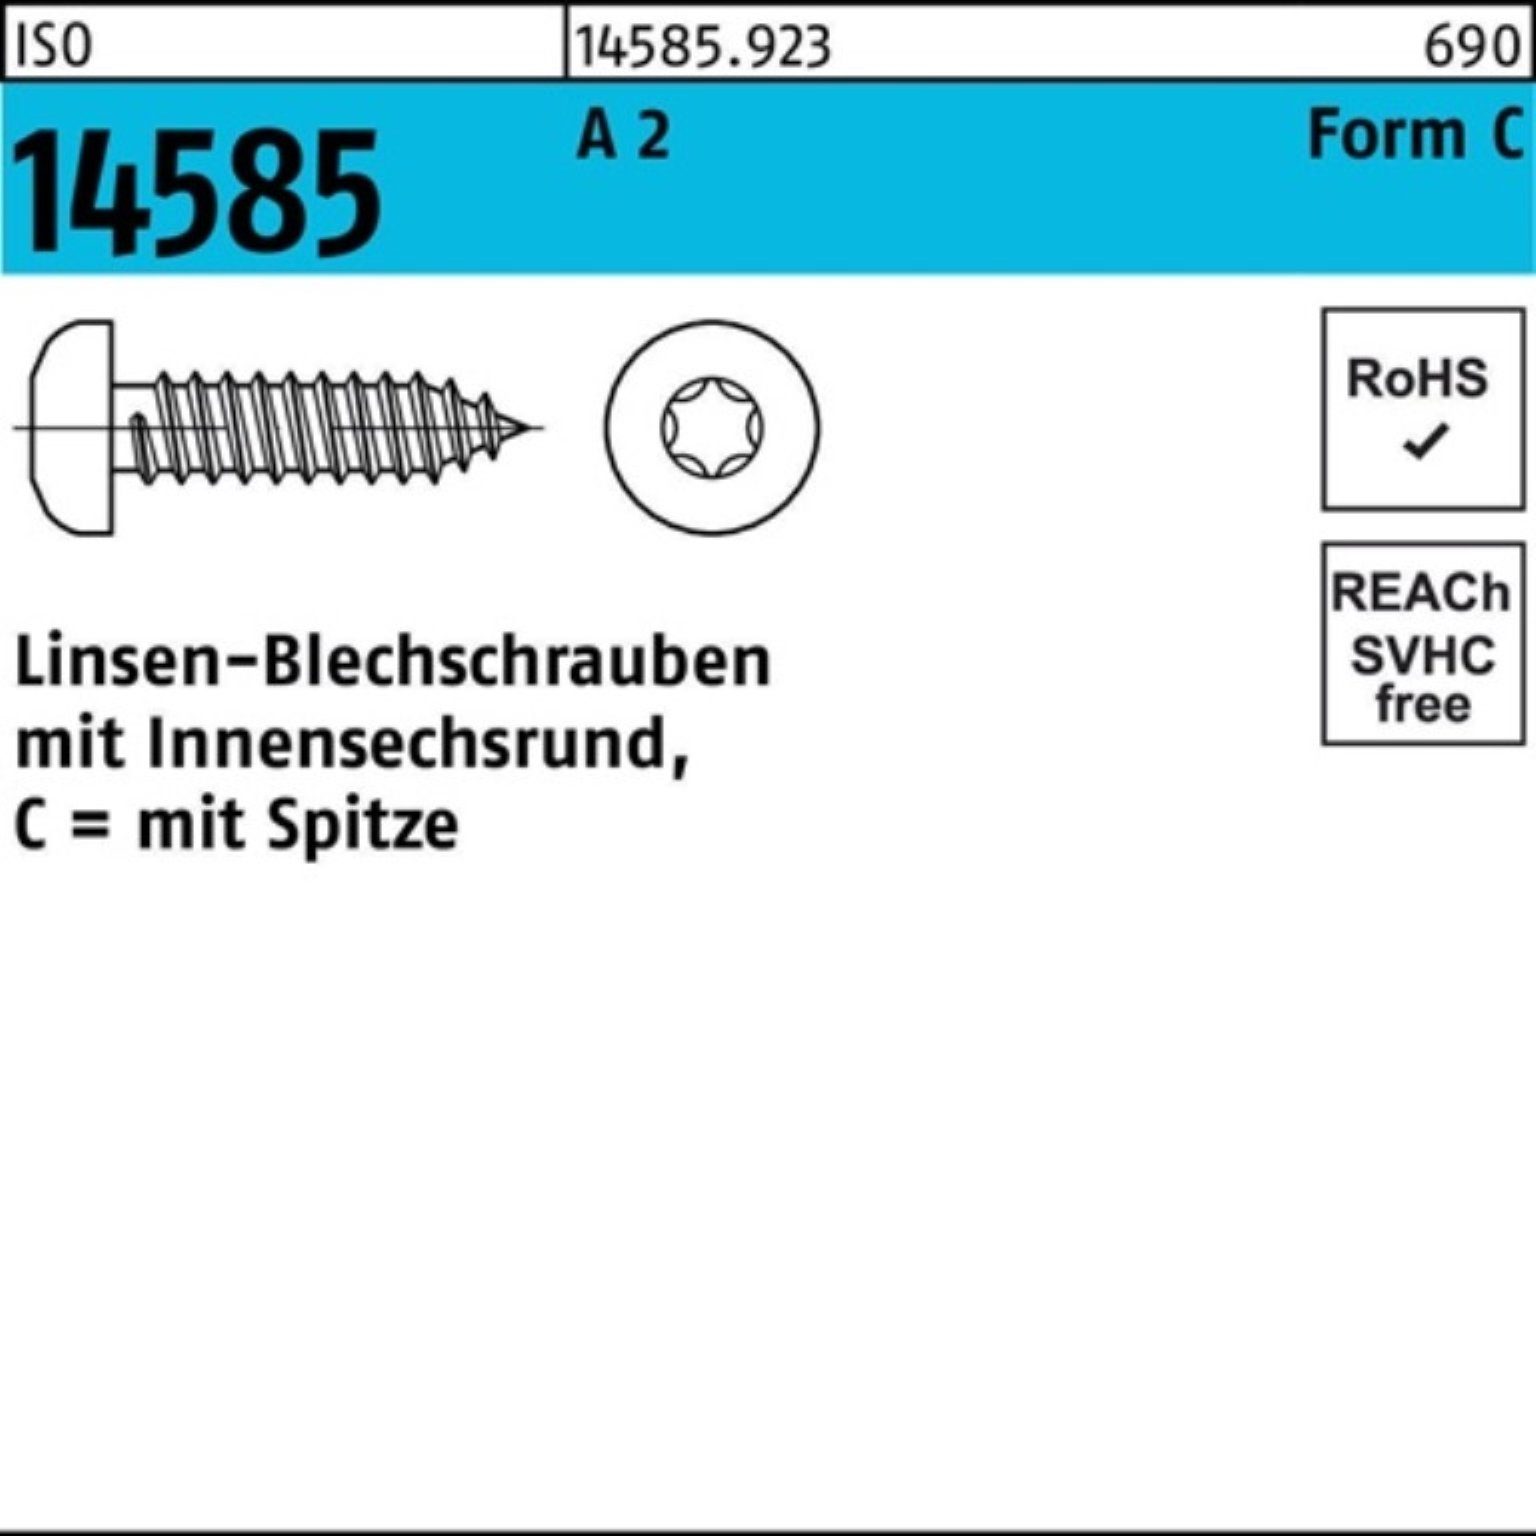 T30 Linsenblechschraube 250 6,3x 38 St Reyher ISO 250er ISR 14585 2 Pack A Blechschraube -C